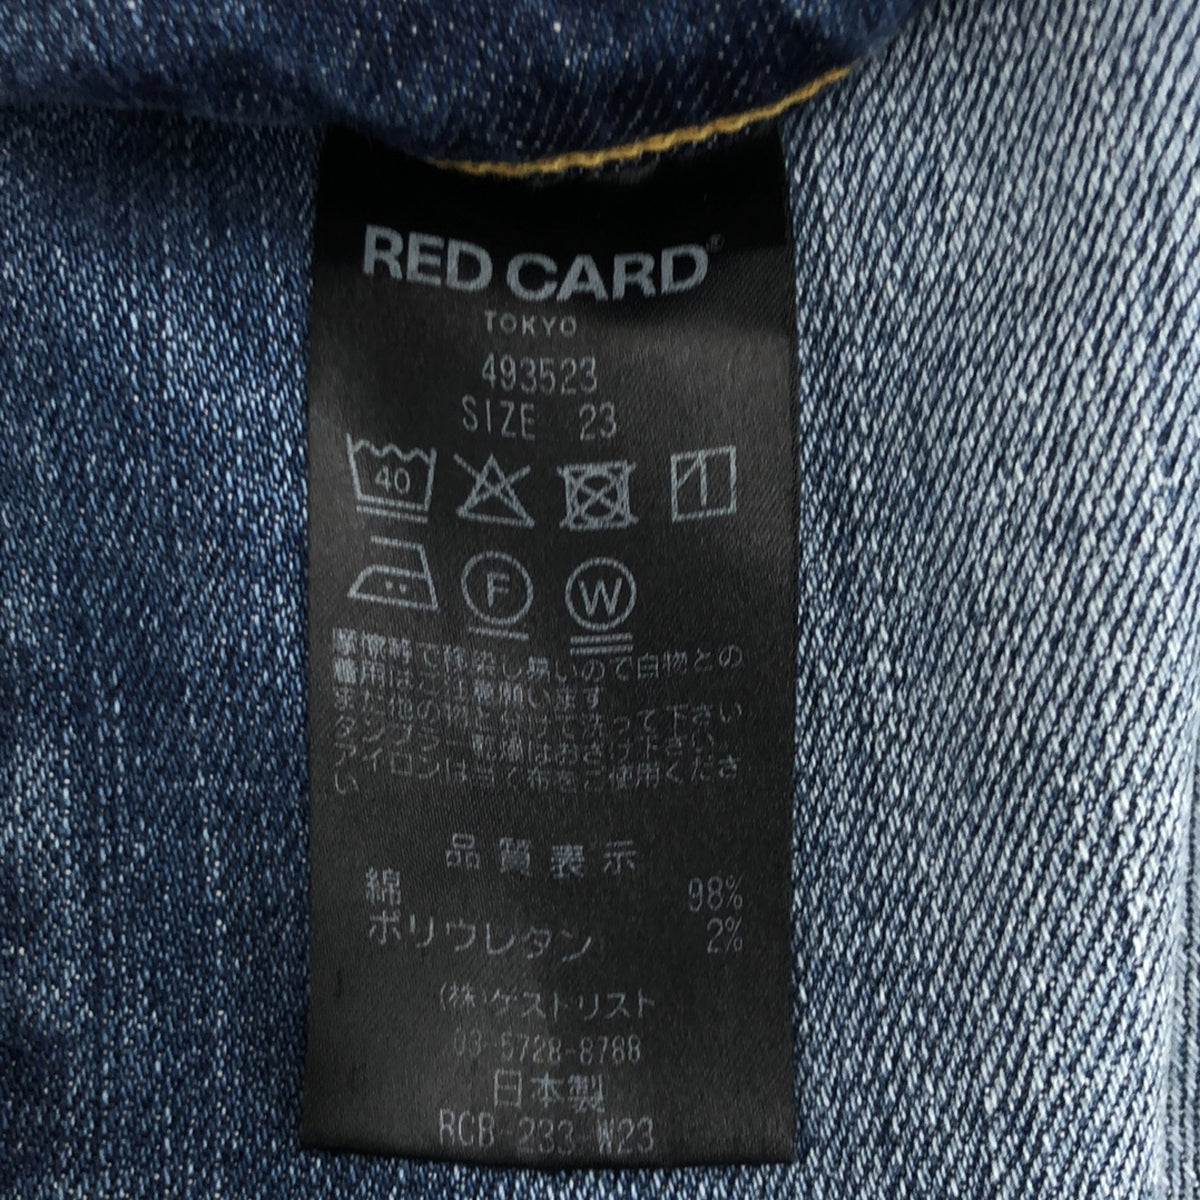 RED CARD / レッドカード | 493523 / ブーツカット フレアデニムパンツ | 23 | レディース